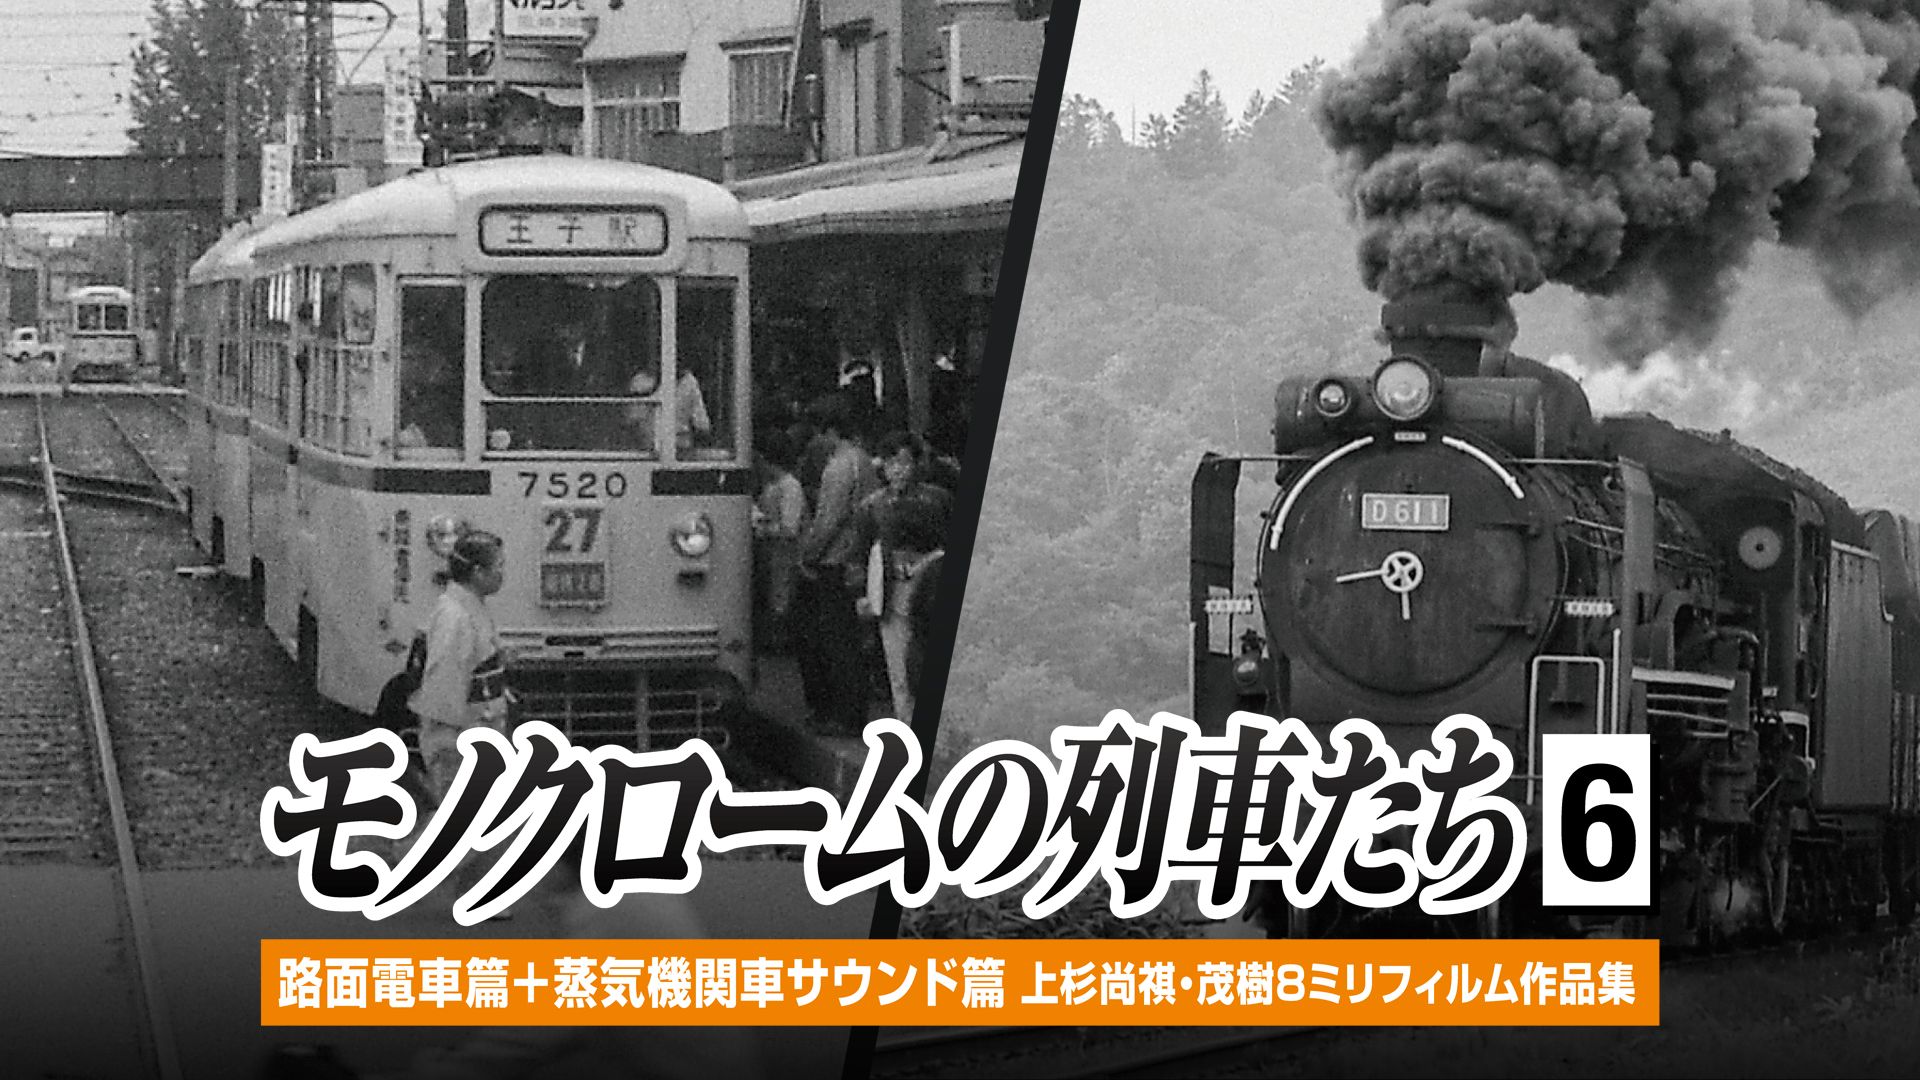 モノクロームの列車たち6路面電車篇+蒸気機関車サウンド篇